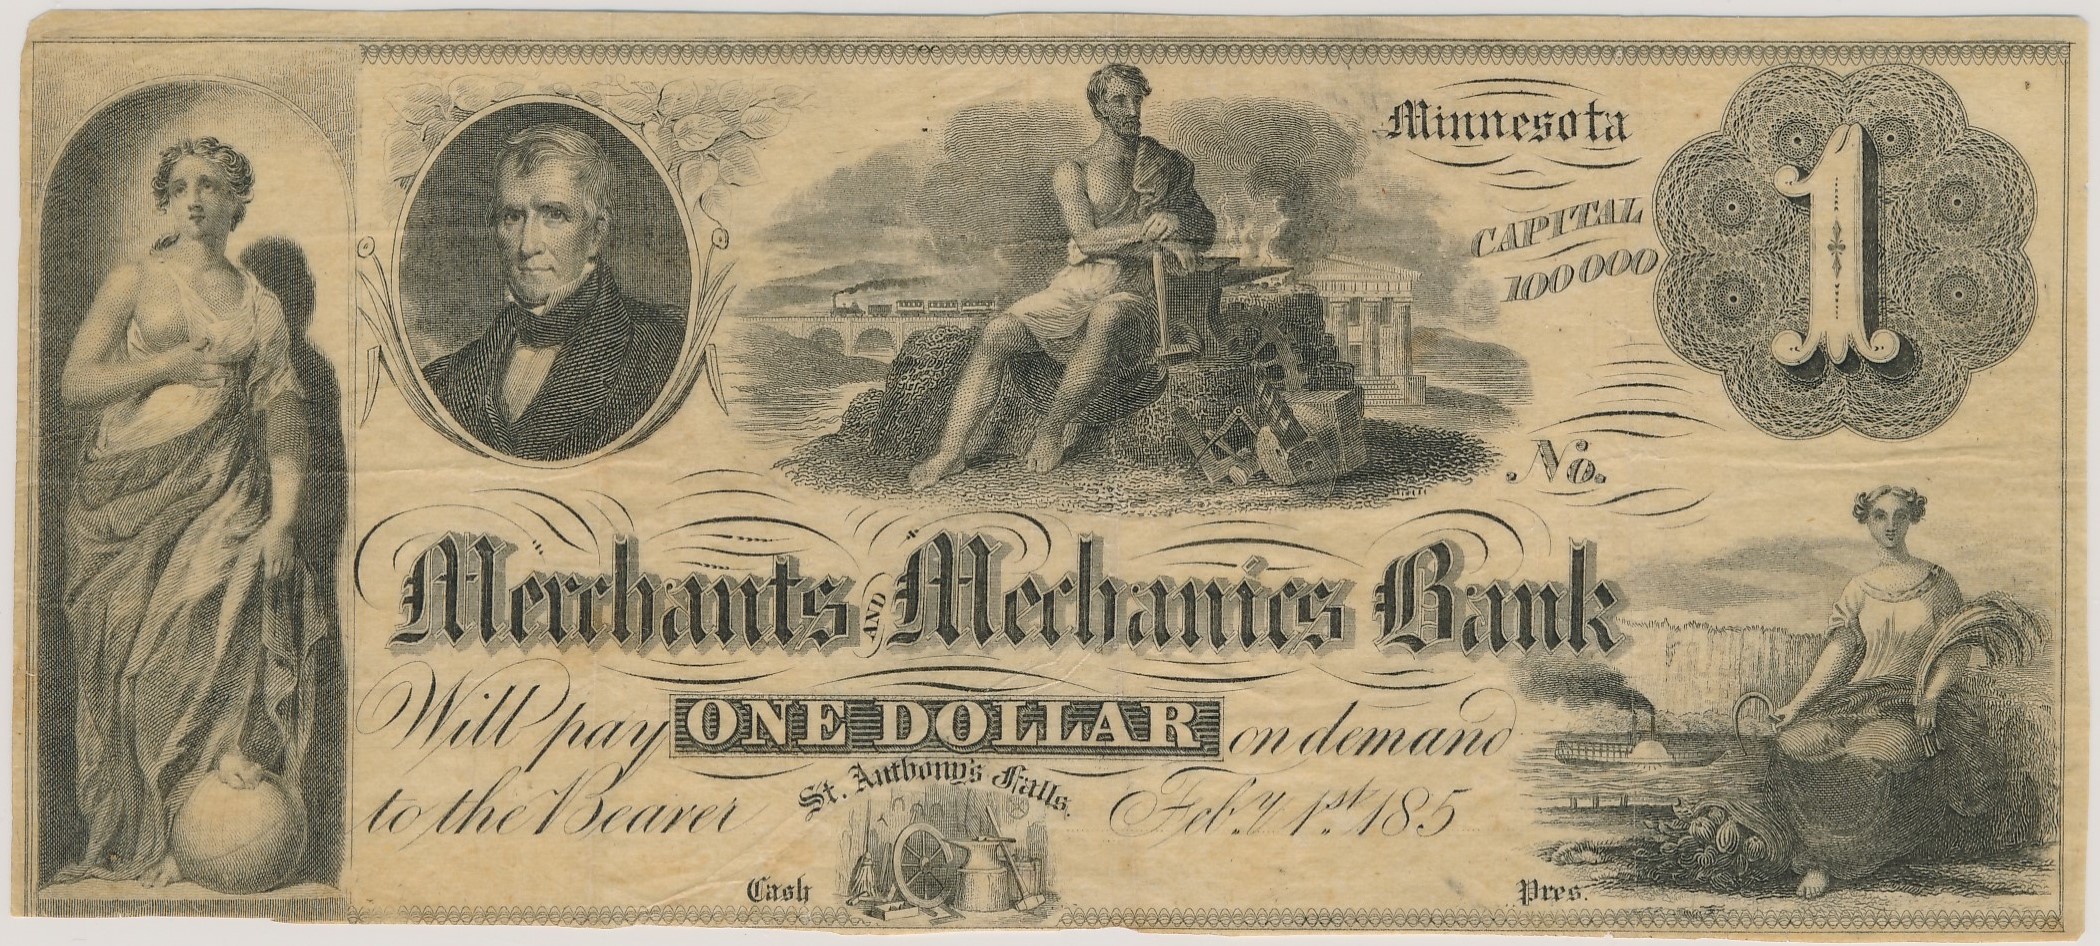 $1 Merchants and Mechanics Bank